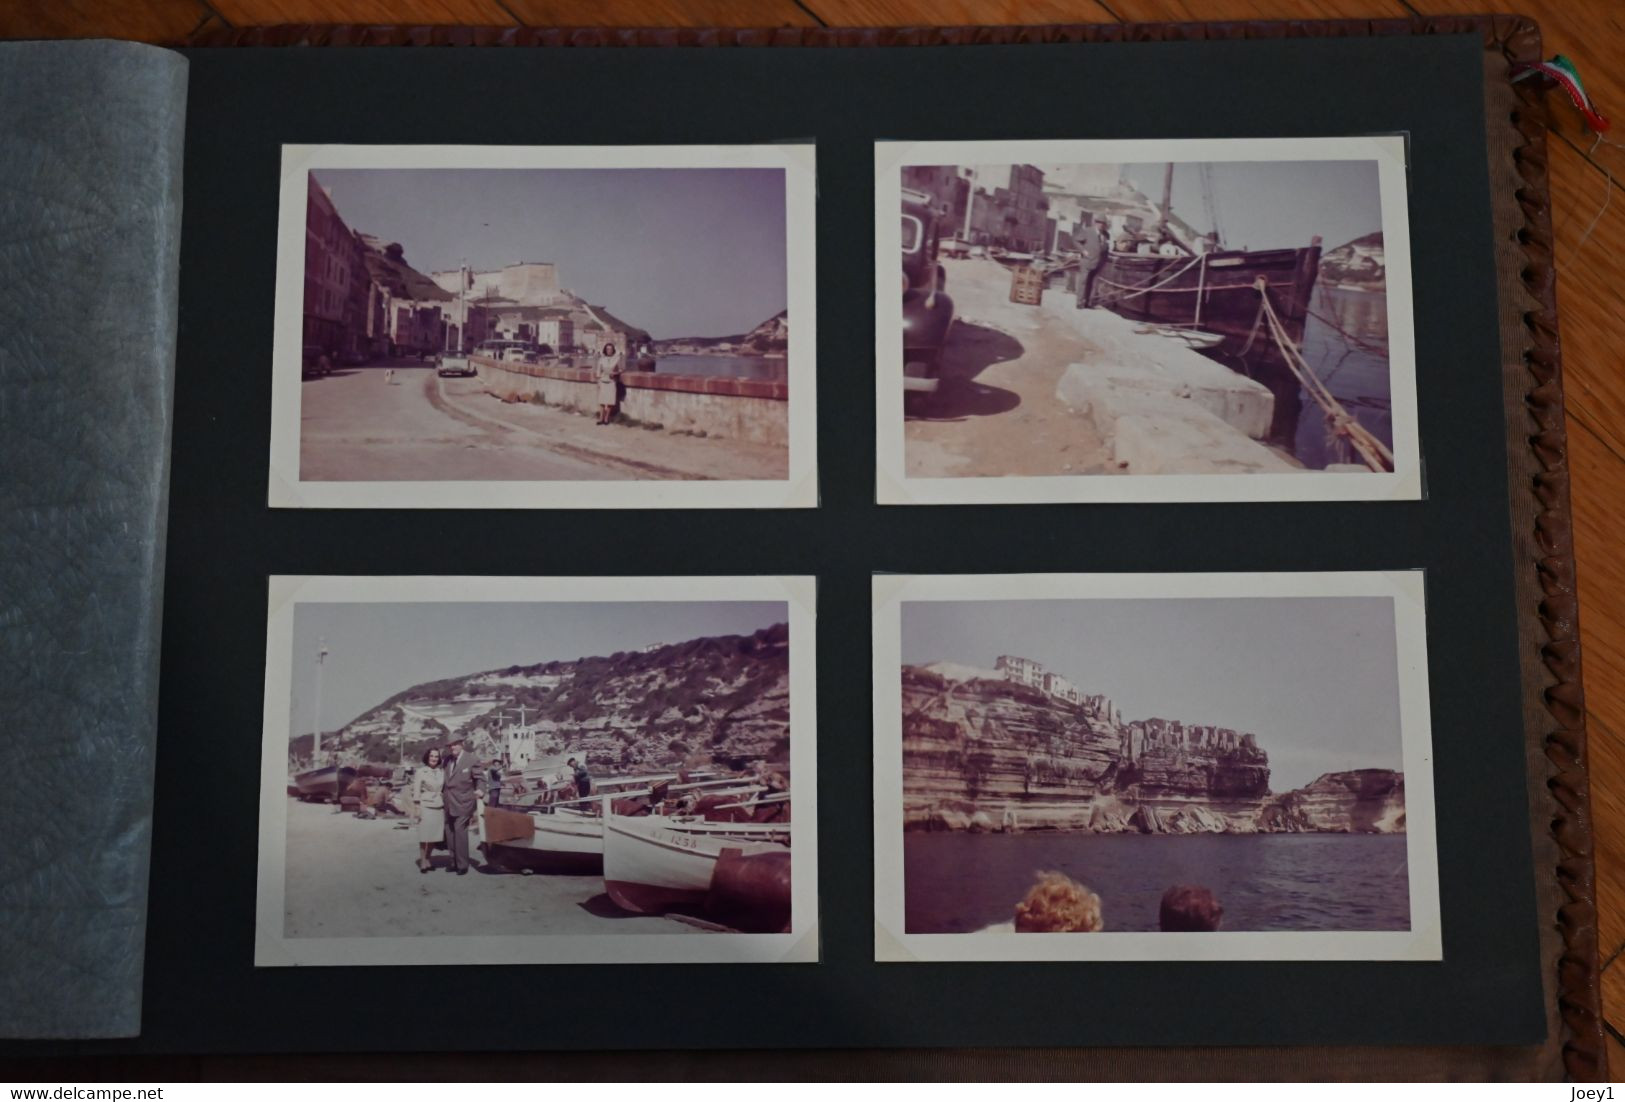 1 lot de 3 Albums photos vacances couleurs années 60 Europe, Afrique du nord, Liban.160 photos